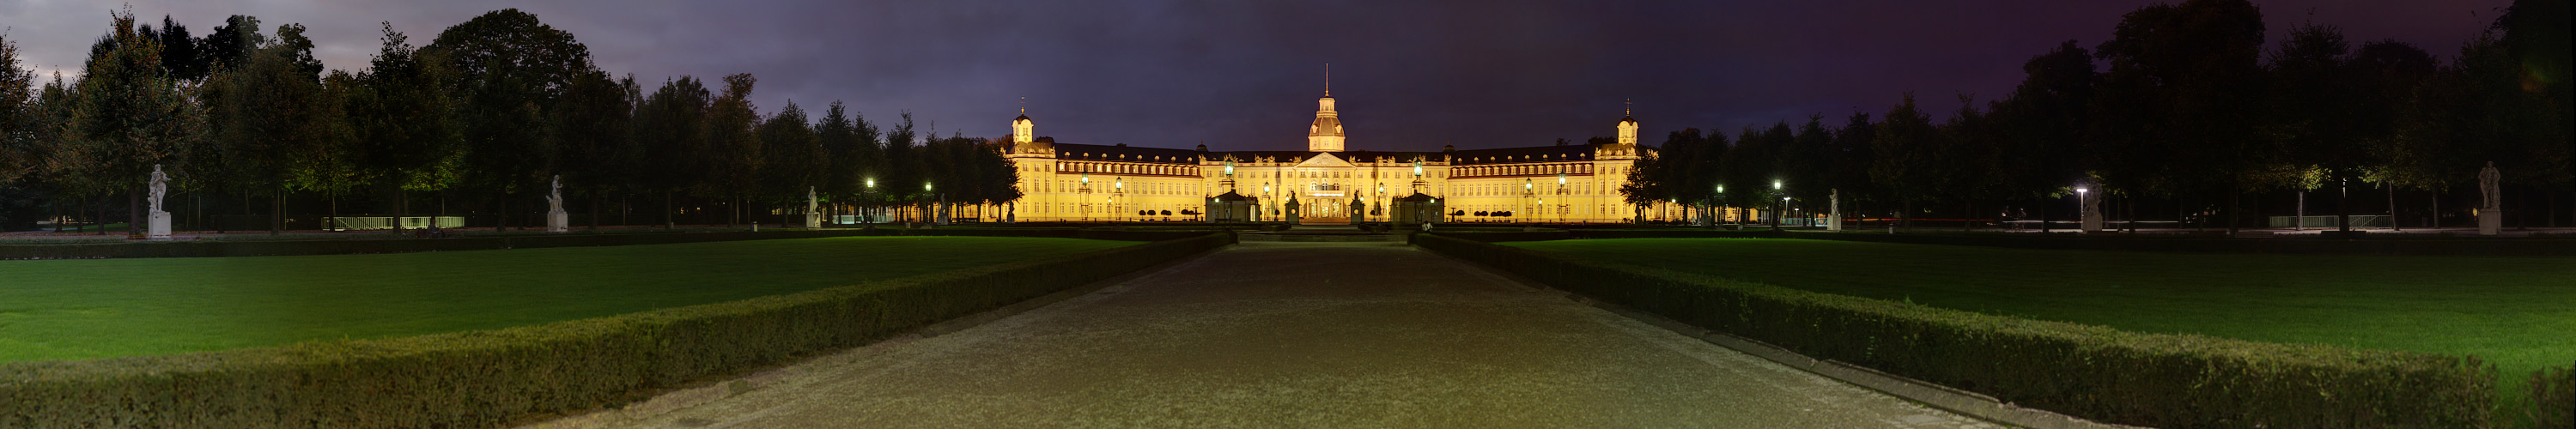 Schloss Karlsruhe bei Nacht 2